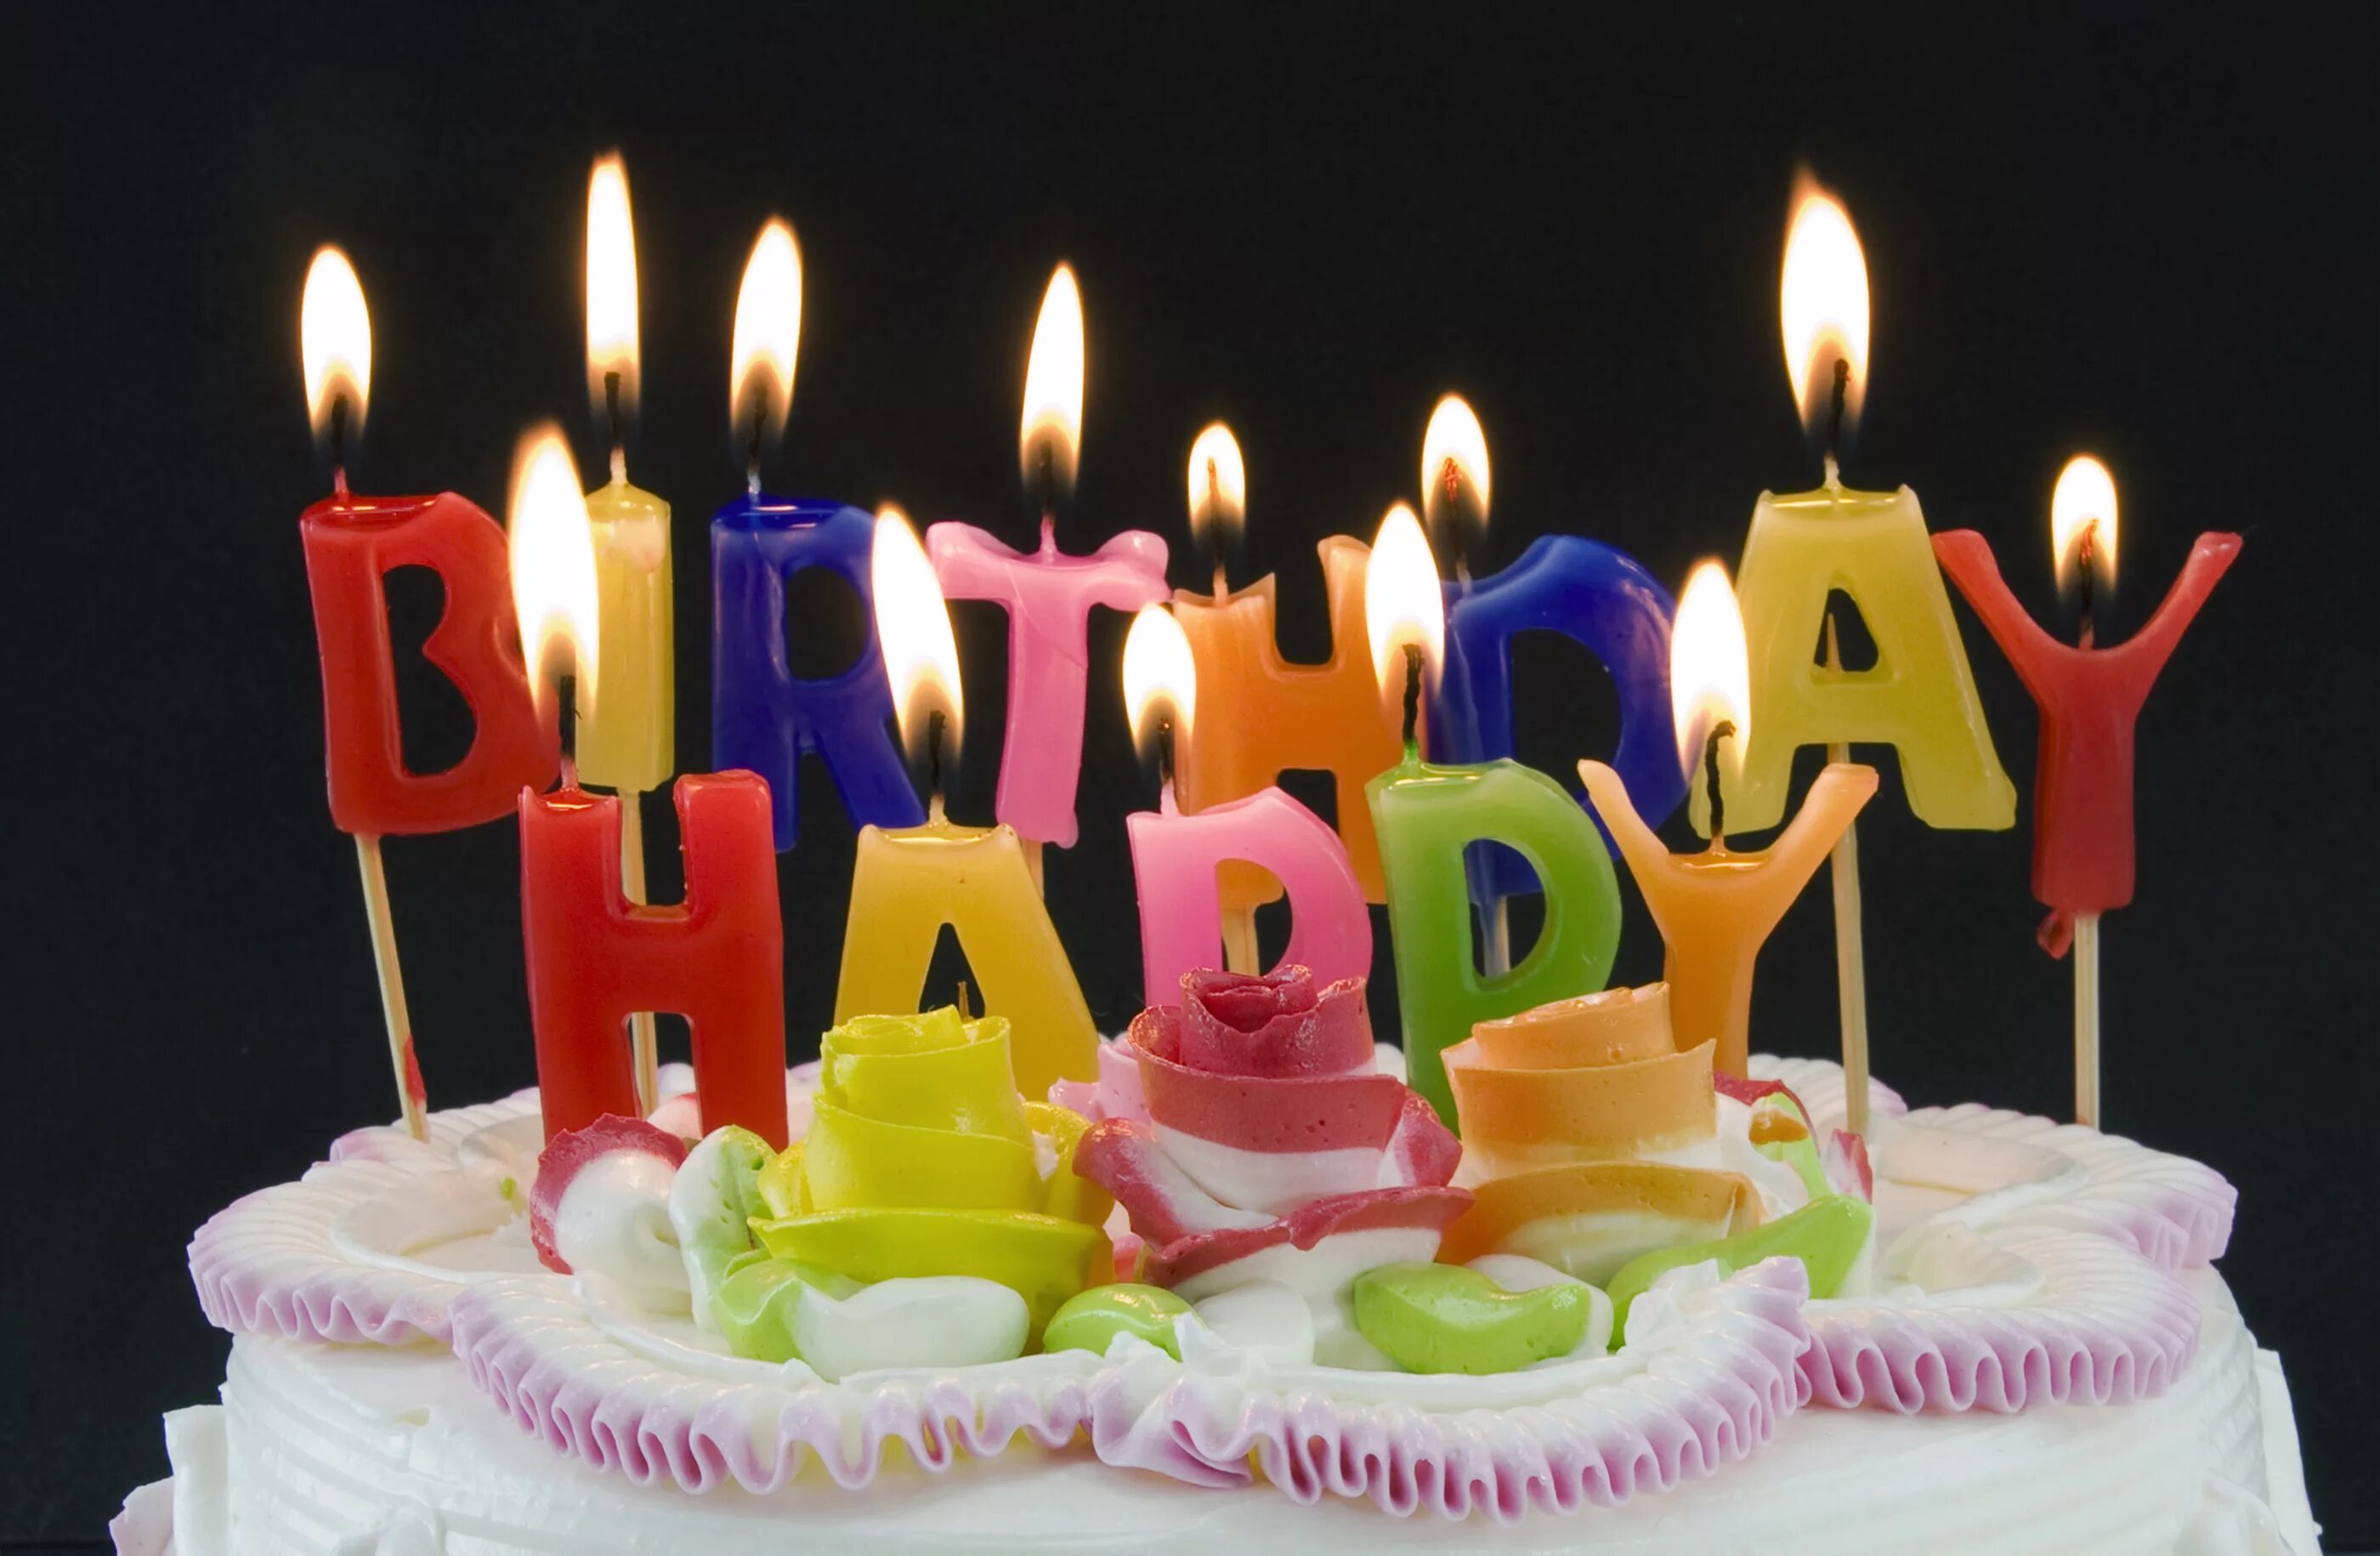 День рождение 27 12. Свечи для торта. Торт со свечками. Свеча в торт "с днем рождения". Свечки на день рождения.